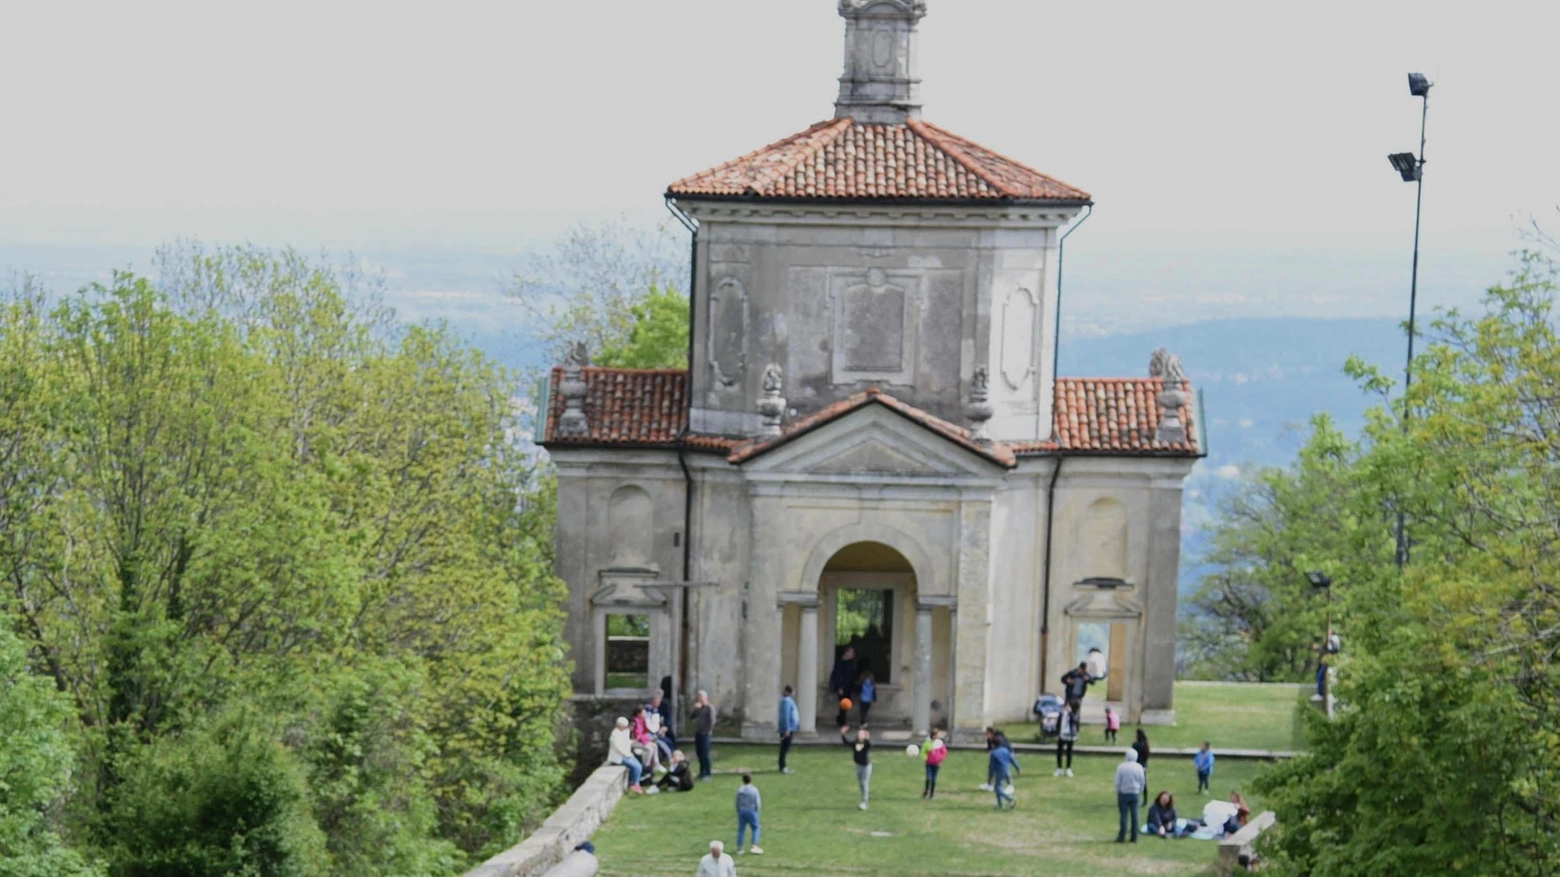 Visite al Sacro Monte  Riapre la funicolare  Atteso l’assalto dei turisti